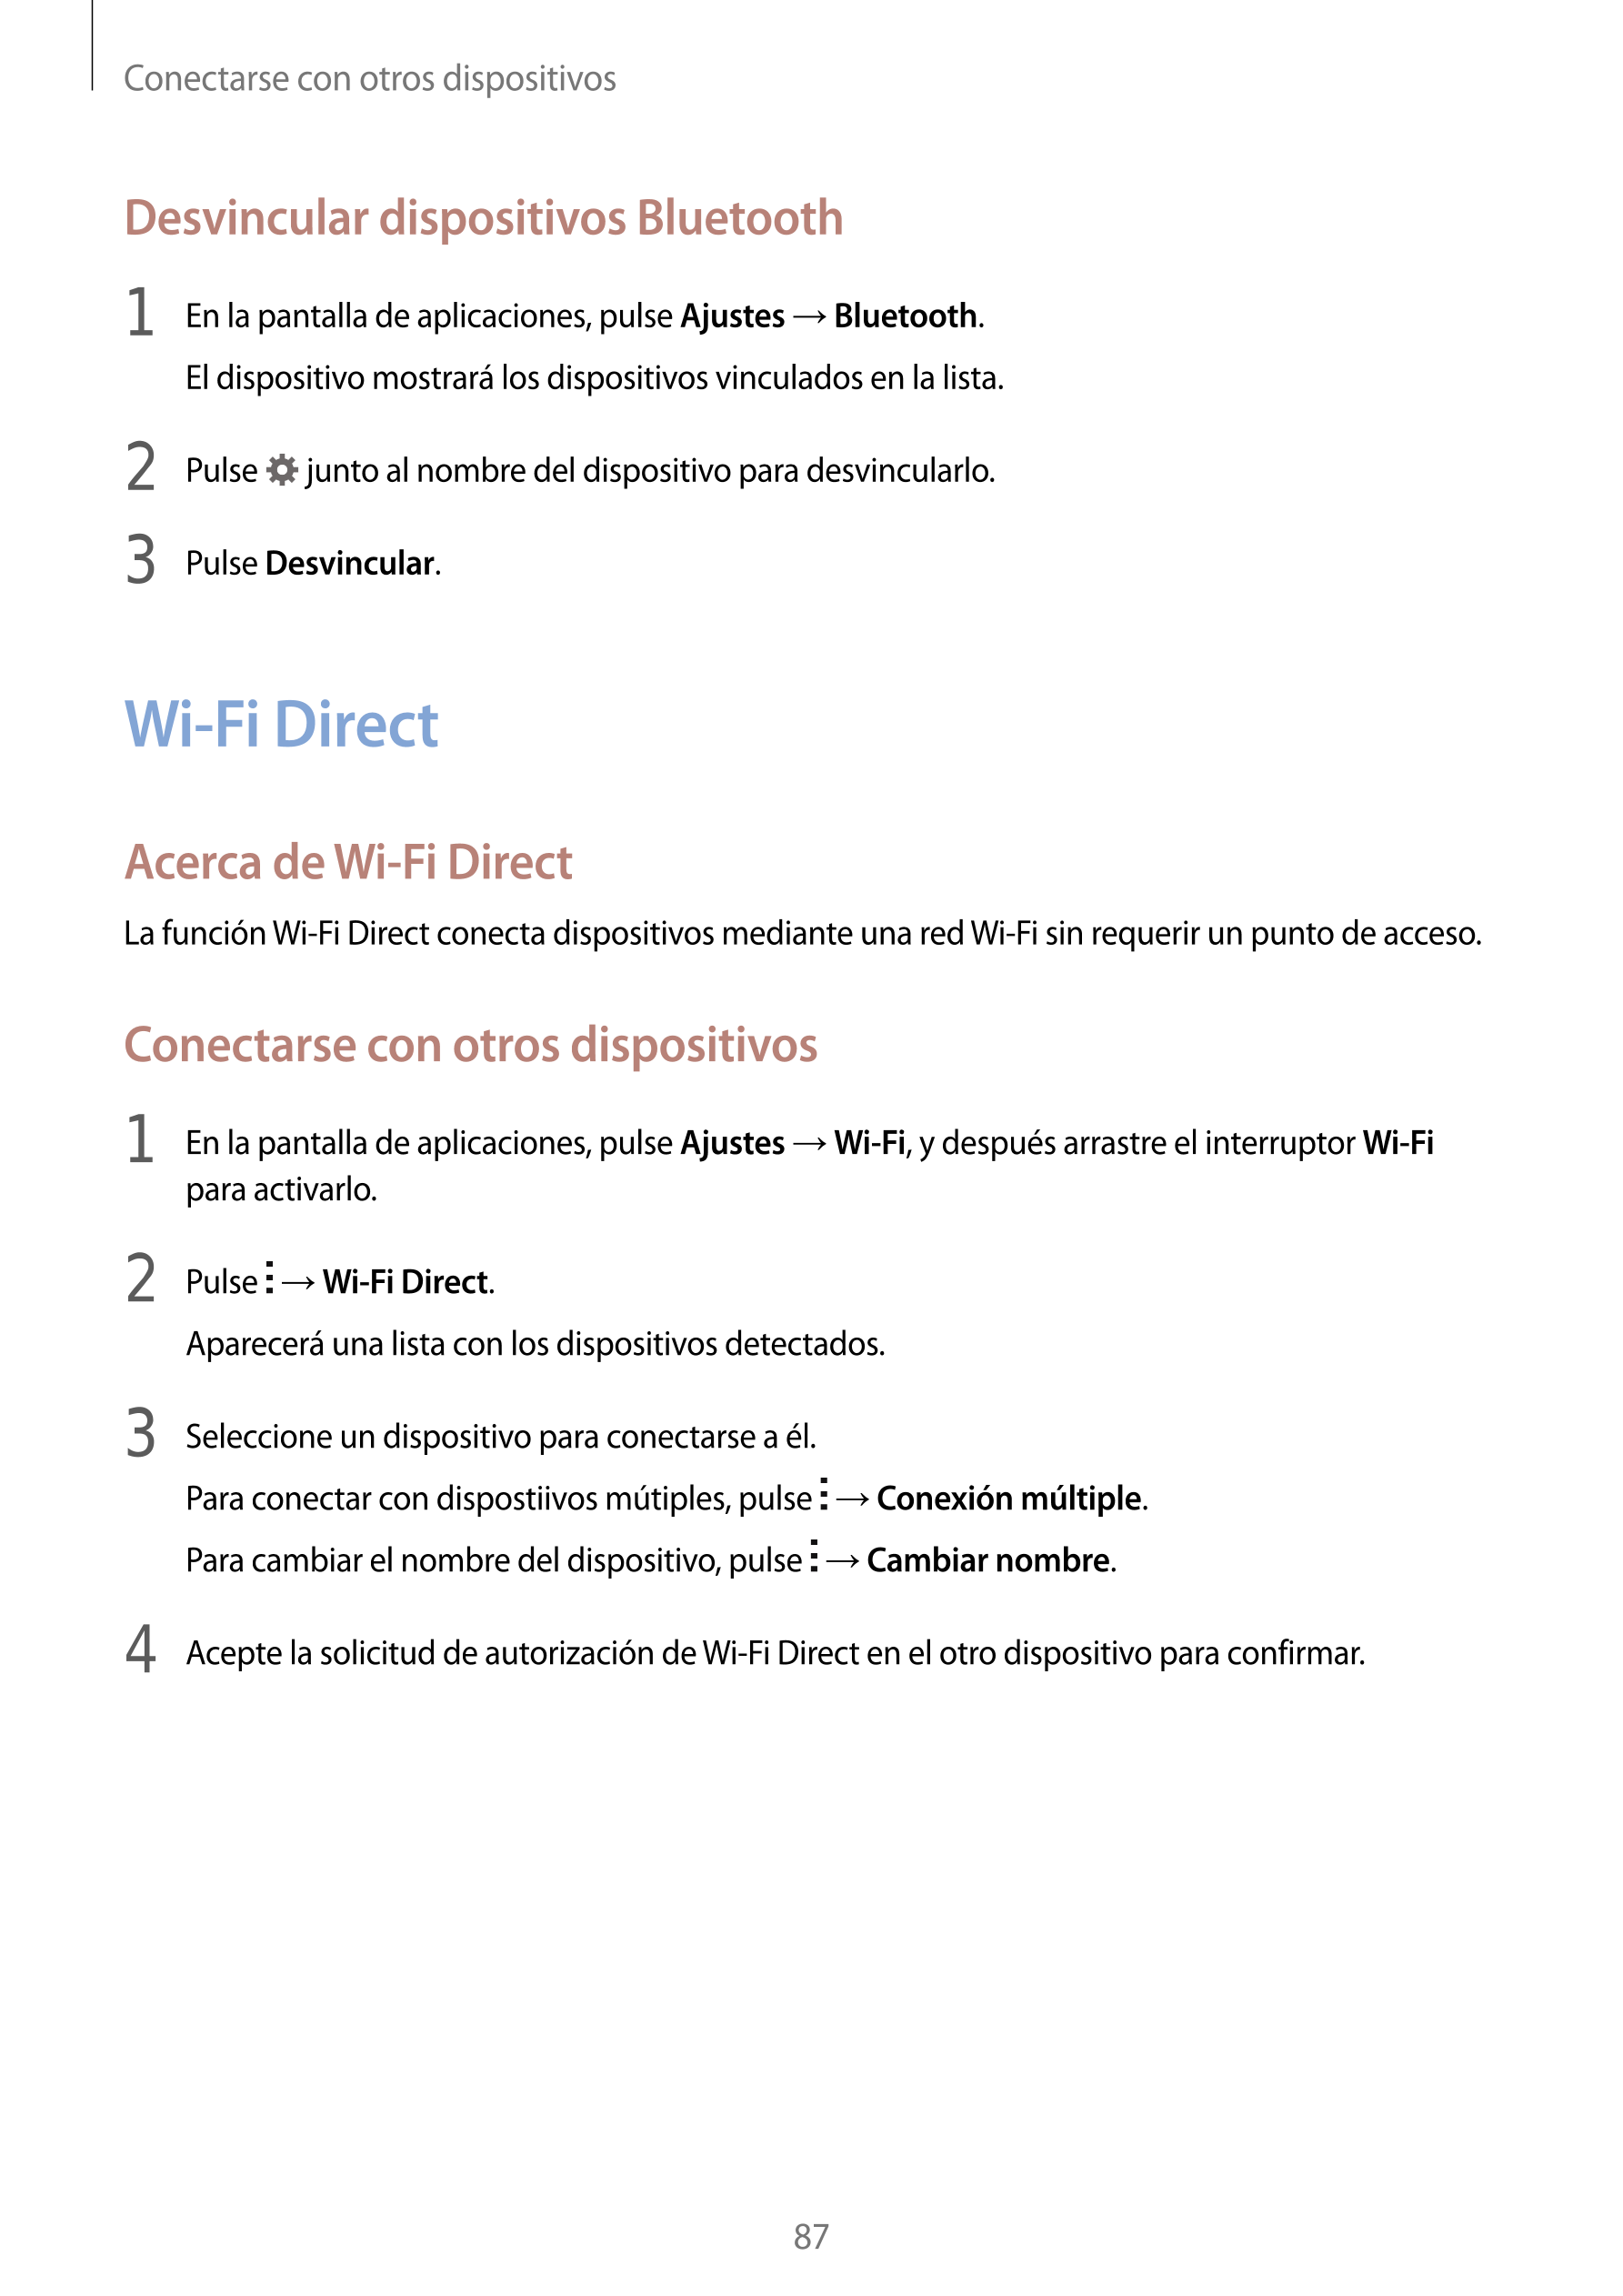 Conectarse con otros dispositivos
Desvincular dispositivos Bluetooth
1  En la pantalla de aplicaciones, pulse  Ajustes  →  Bluet